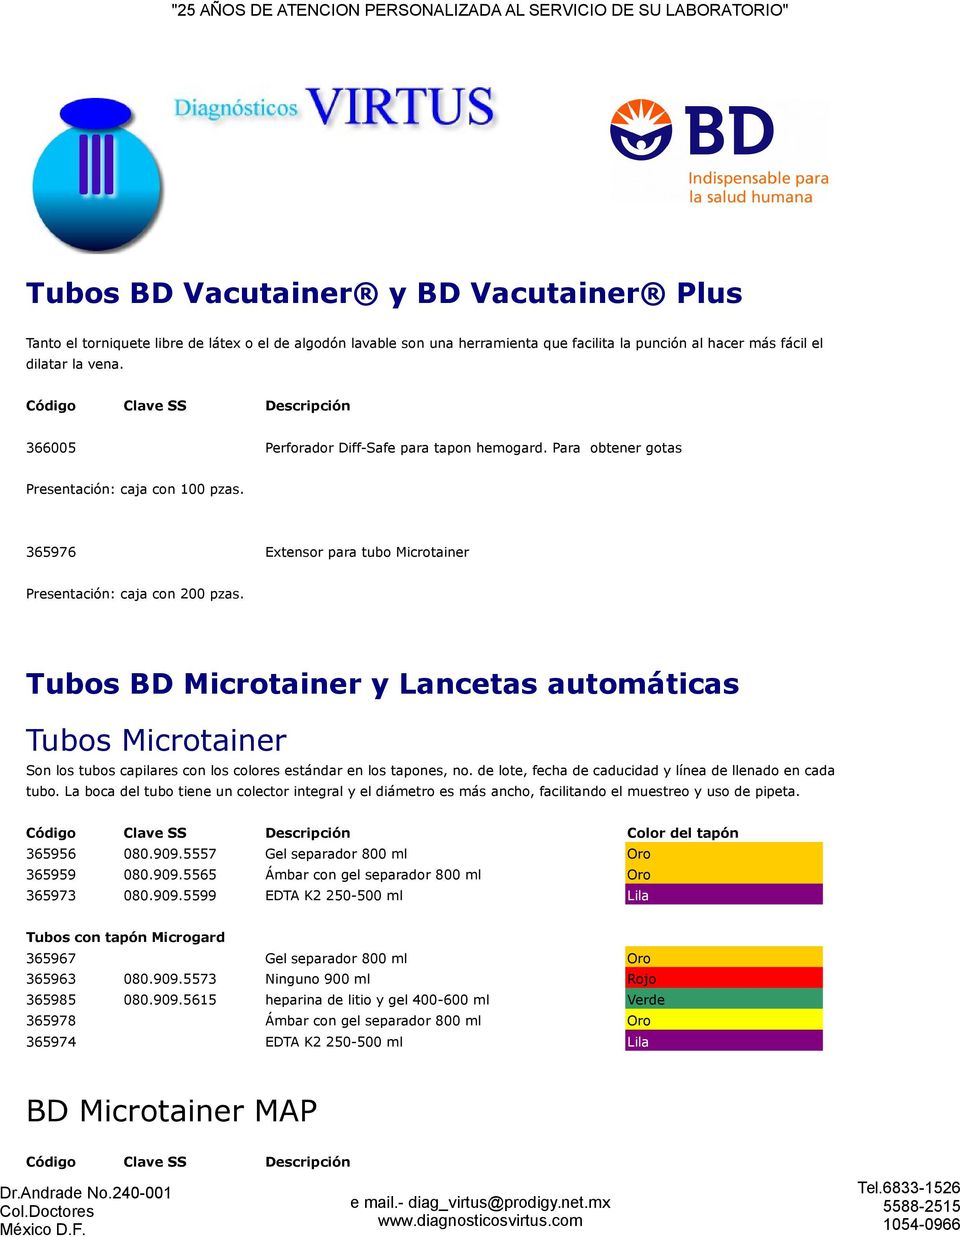 Tubos BD Microtainer y Lancetas automáticas Tubos Microtainer Son los tubos capilares con los colores estándar en los tapones, no. de lote, fecha de caducidad y línea de llenado en cada tubo.